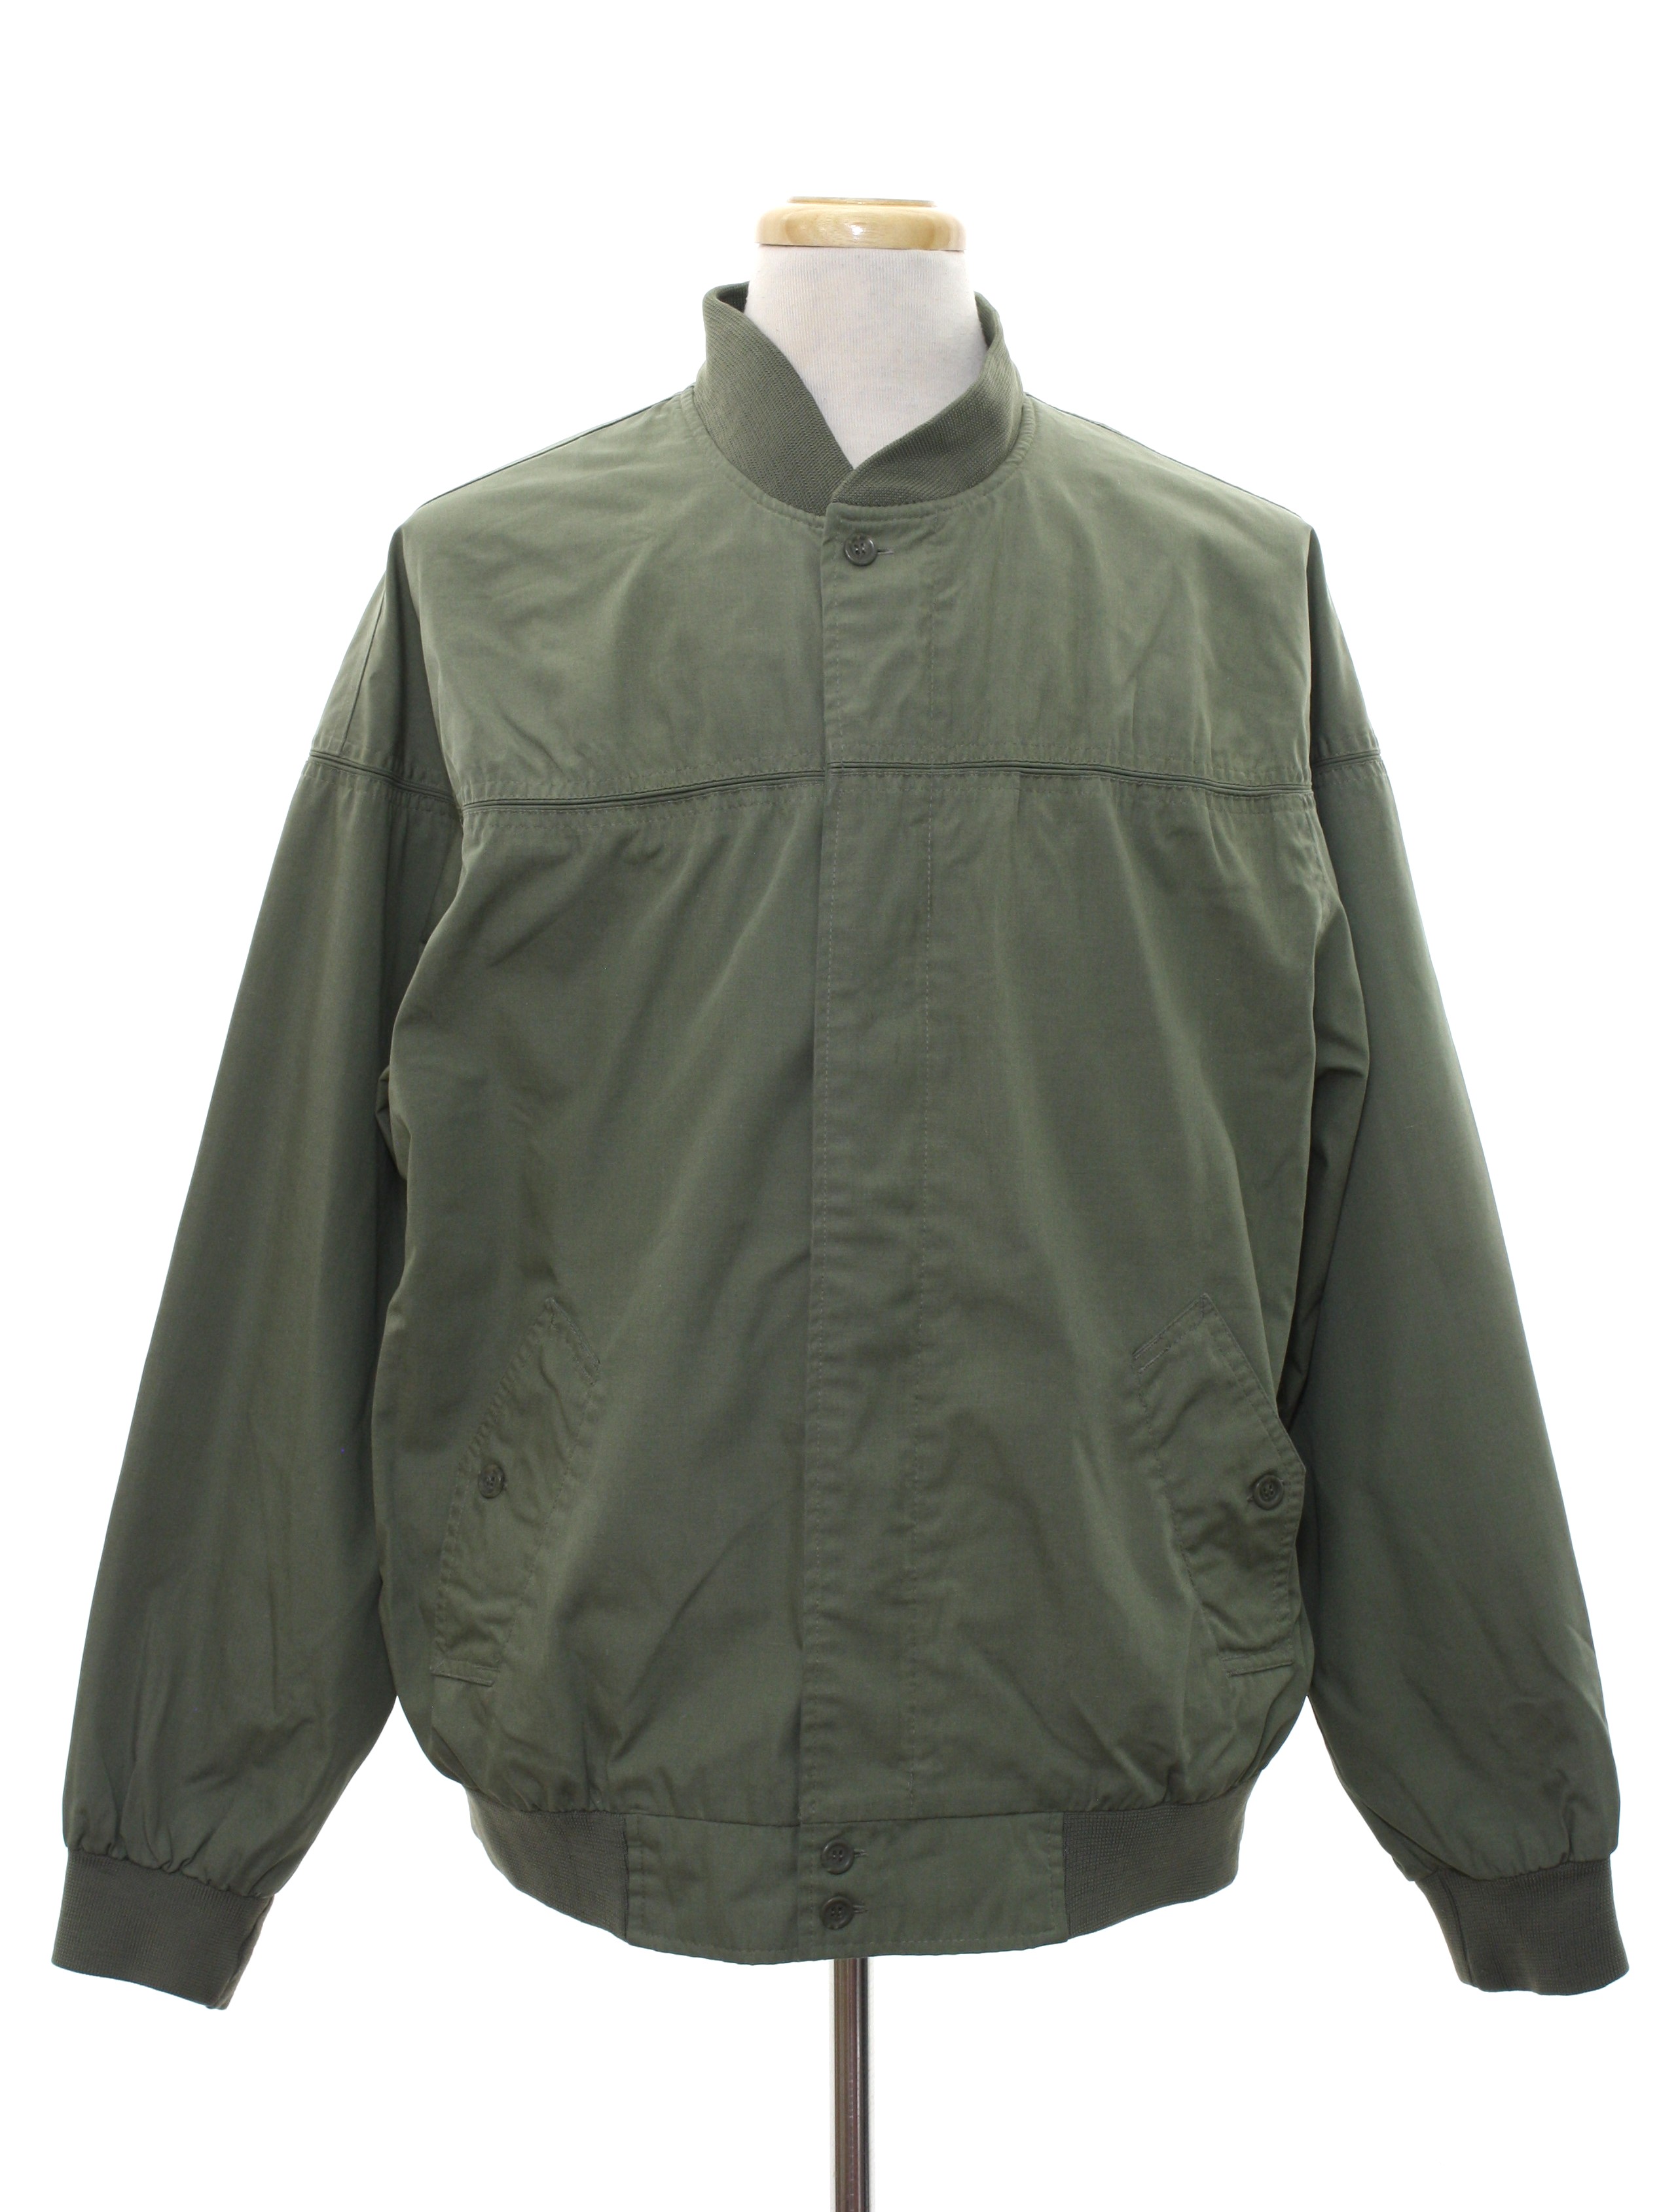 Retro 1990's Jacket (Munsingwear) : 90s -Munsingwear- Mens sage green ...